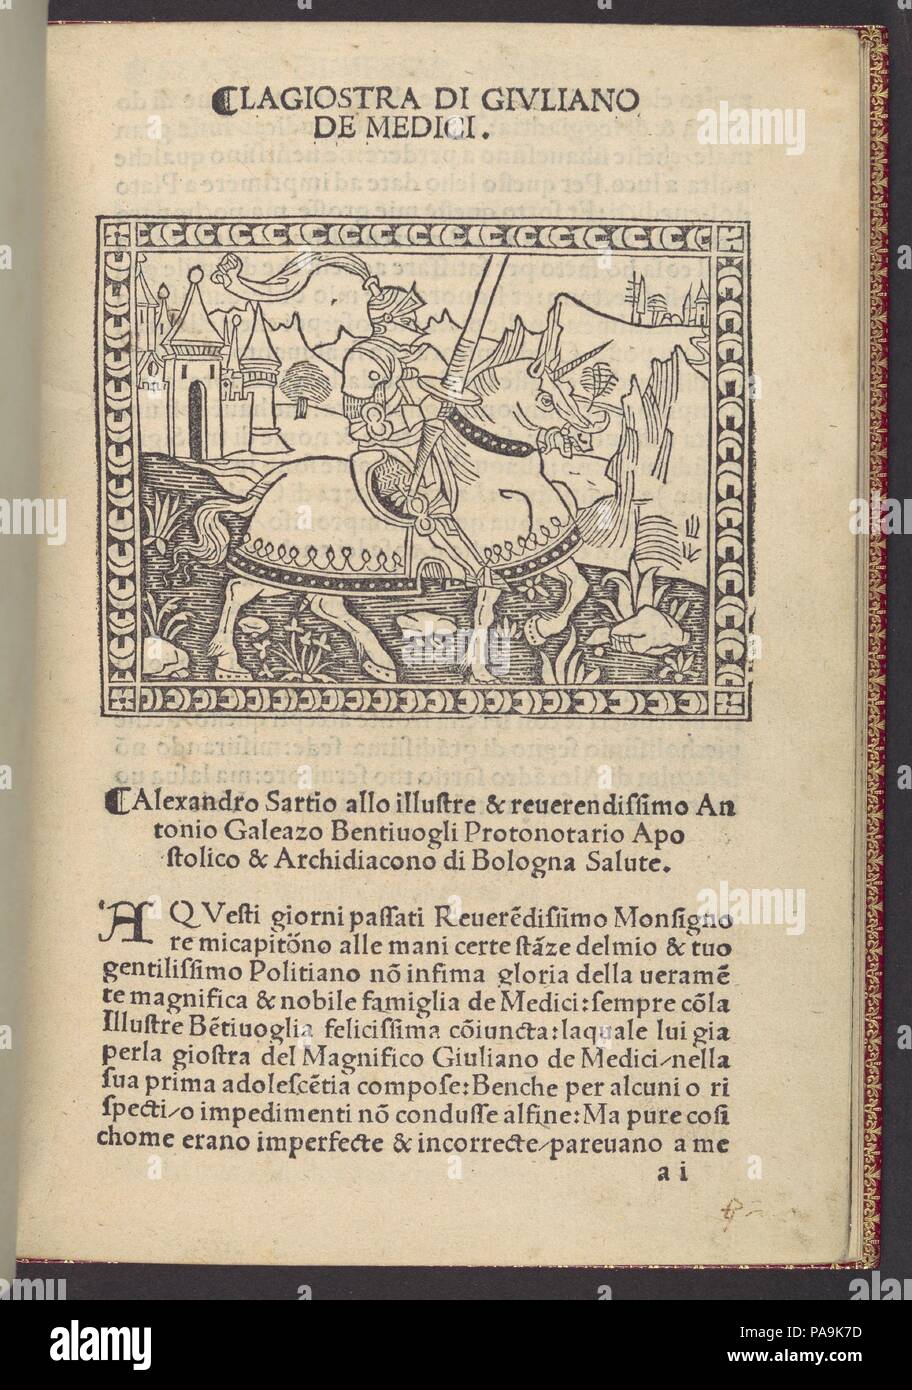 La giostra di Giuliano de Medici... Autor: Angelo Poliziano (Italienisch, Montepulciano, Florenz 1454-1494). Abmessungen: 7 5/8 x 5 1/2 x 3/8 in. (19,3 x 13,9 x 1 cm). Drucker: Antonio Tubini (Italienisch, aktive Florenz, Ca. 1500-1518); Andrea Ghirlandi (Italienisch, aktive Florenz Ca. 1500-1518). Erschienen in: Florenz. Herausgeber: Lorenzo de Alopa. Datum: Ca. 1495-1500. Die humanistischen Gelehrten Politian, ein Schützling von Lorenzo de' Medici, war führend in der Nutzung der Toskanischen Dialekt, in der Poesie. Sein berühmtestes Gedicht, komponierte das Turnier im Jahr 1475 von Lorenzos Bruder Giuliano zu gedenken, ist unter anderem Thi Stockfoto